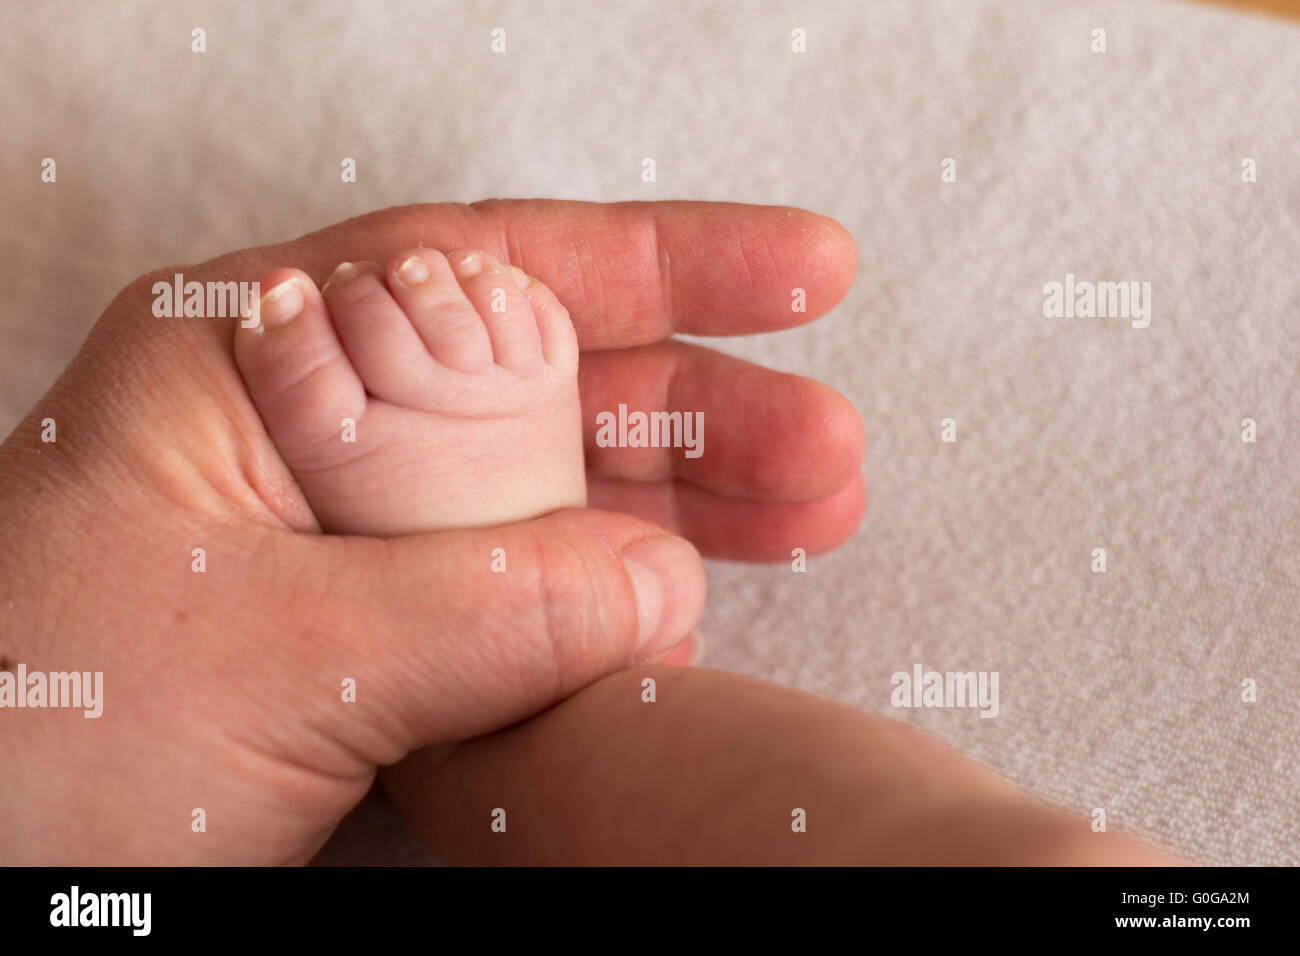 Säugling Fuß in der Hand eines Erwachsenen - Nahaufnahme Stockfoto